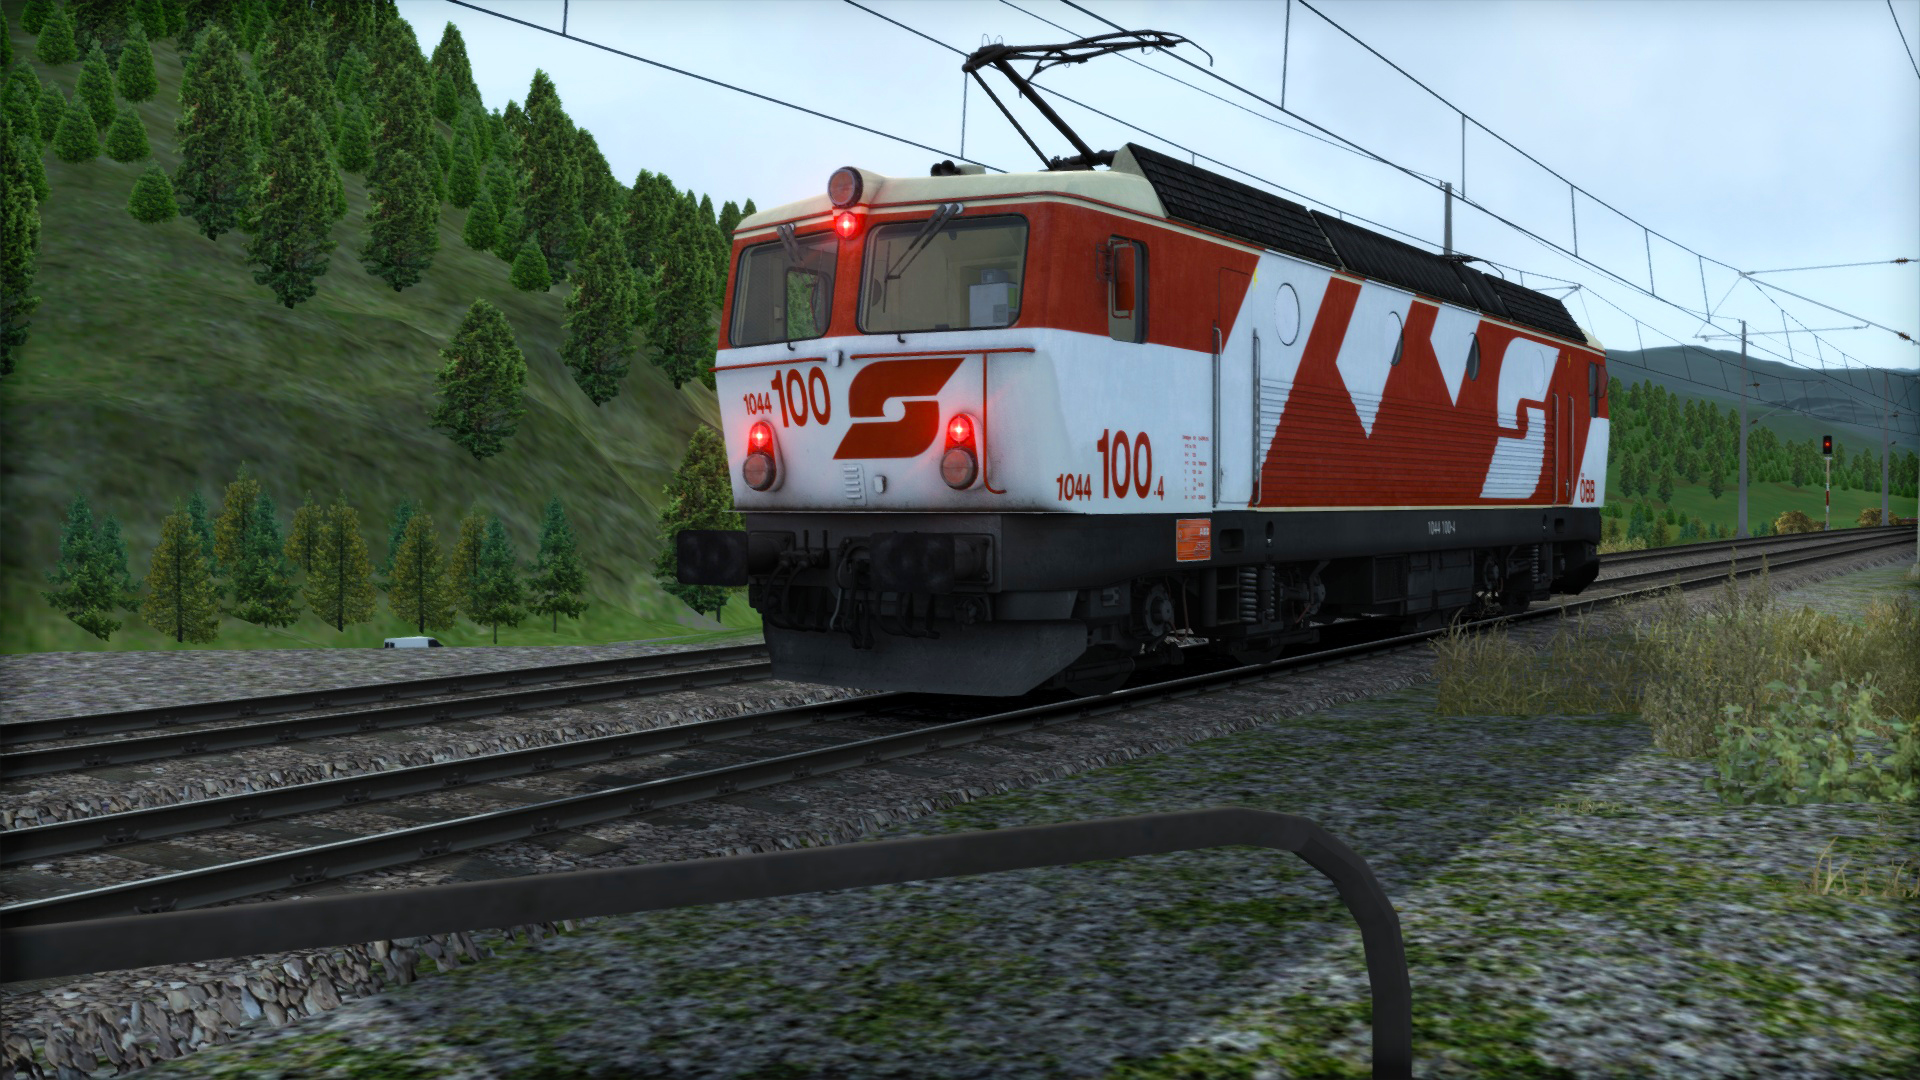 OBB 1044. OBB 1245. ÖBB class 1044. Австрийские федеральные железные дороги. Скопировать в obb